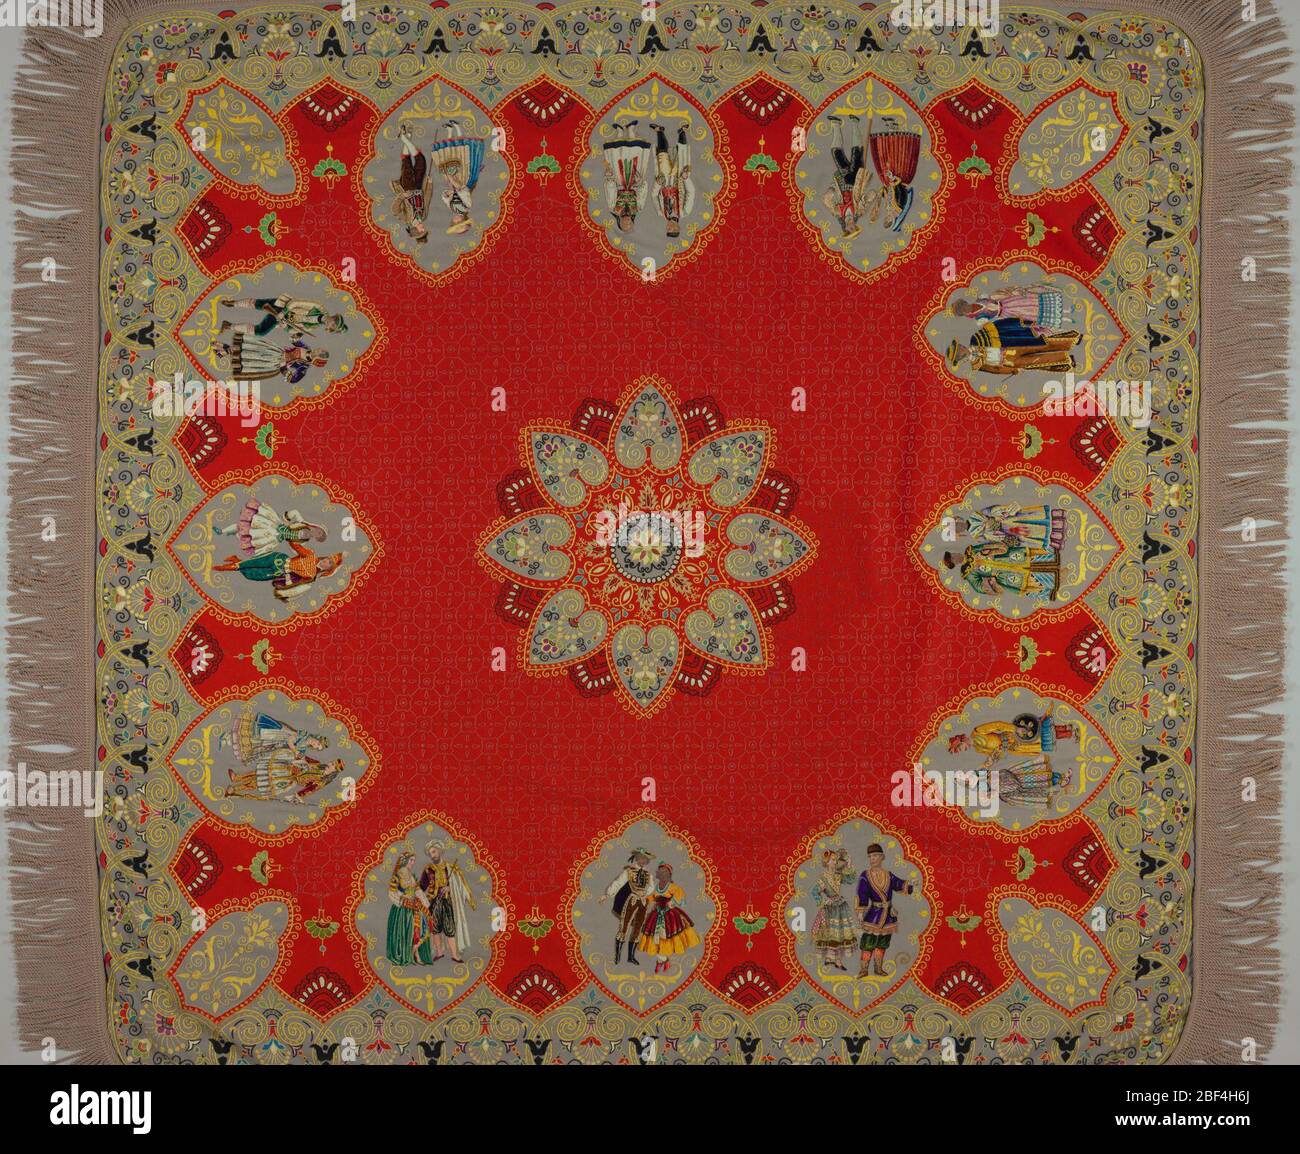 Textile. Tissus rouge et gris brodés et appliqués avec soie multicolore et chenille dans un motif médaillons représentant différents personnages, dans un style persan. Frange de laine grise. Banque D'Images